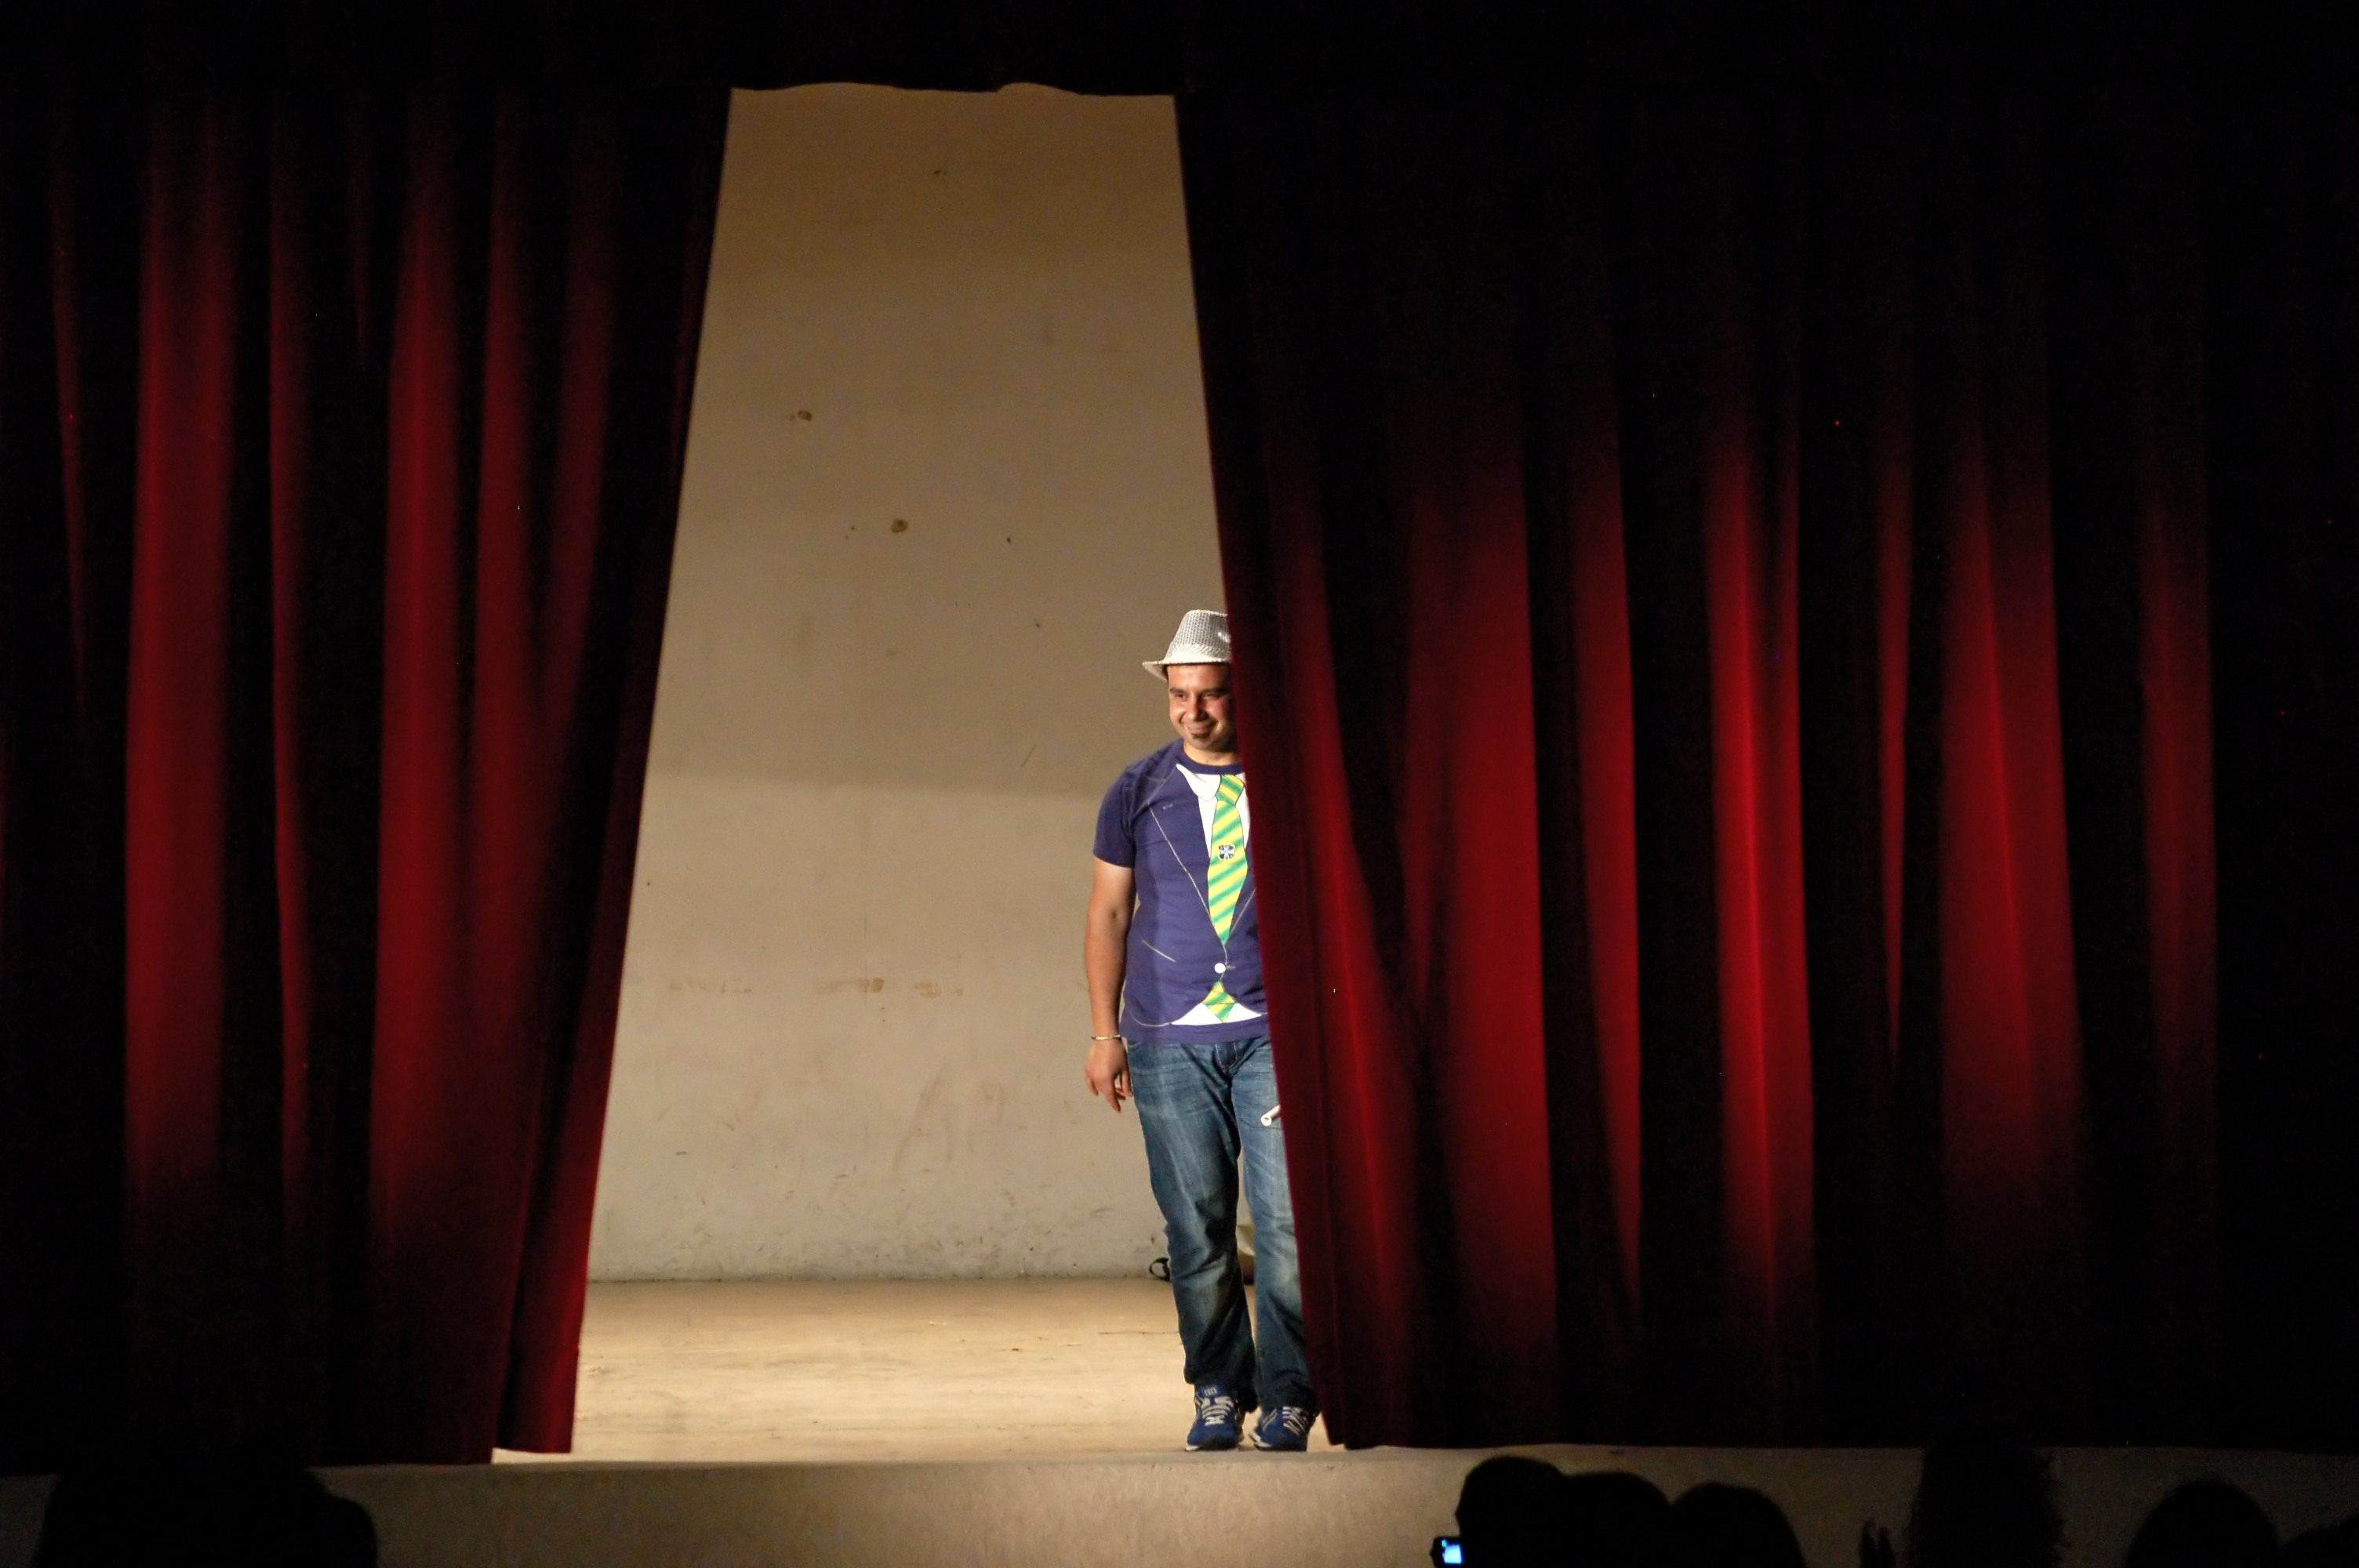 Accademia del Comico, Claudio Zucca: “Il comico sale sul palco per parlare di quello che fa ridere il pubblico”